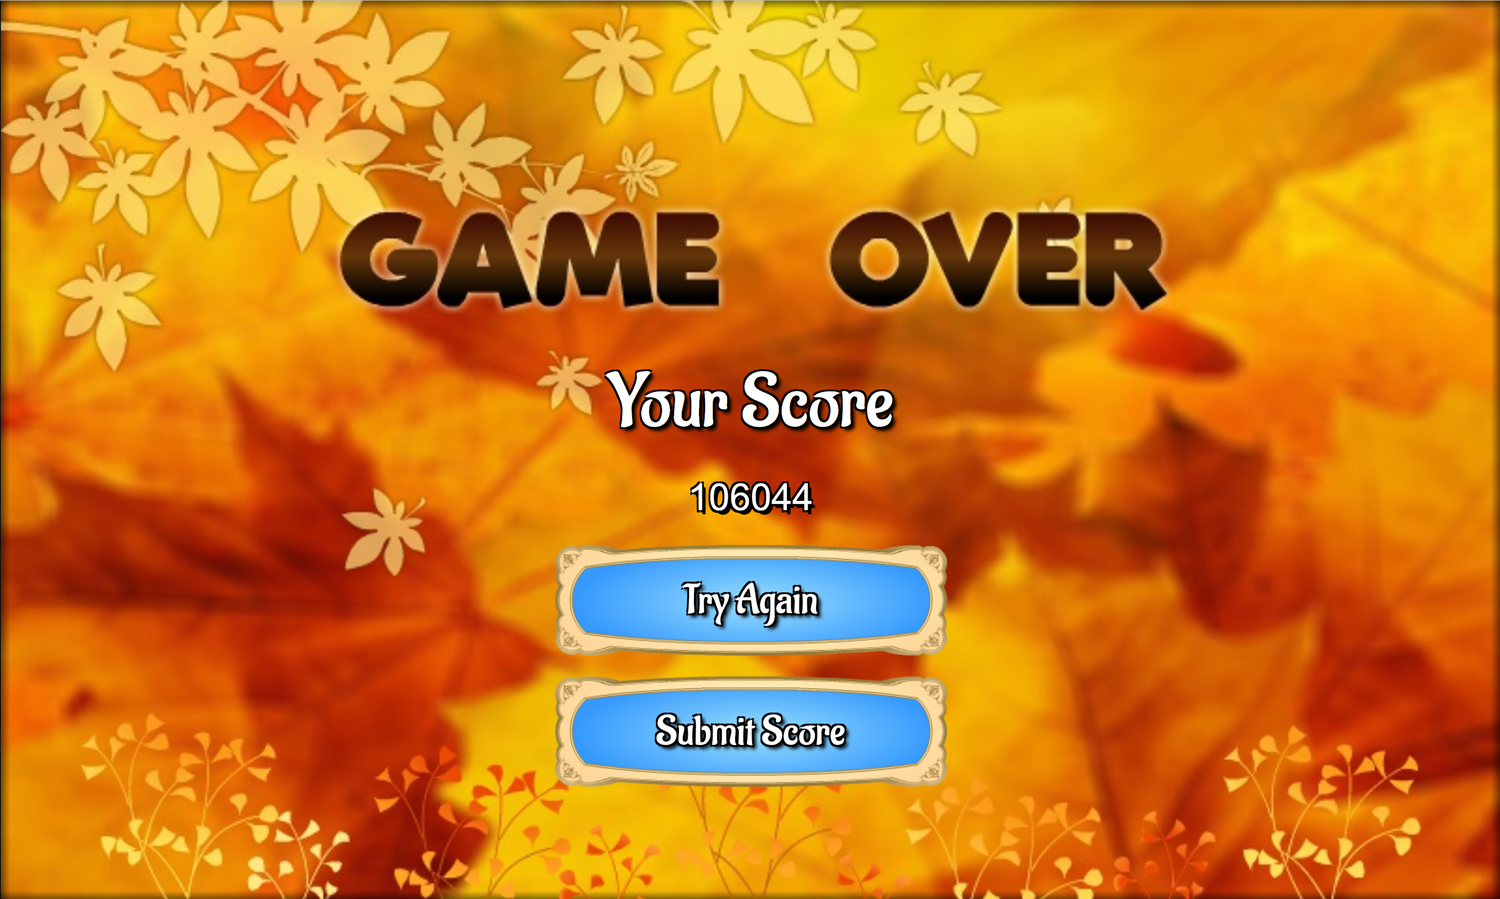 Golden Autumn Mahjong Game Over Screen Screenshot.